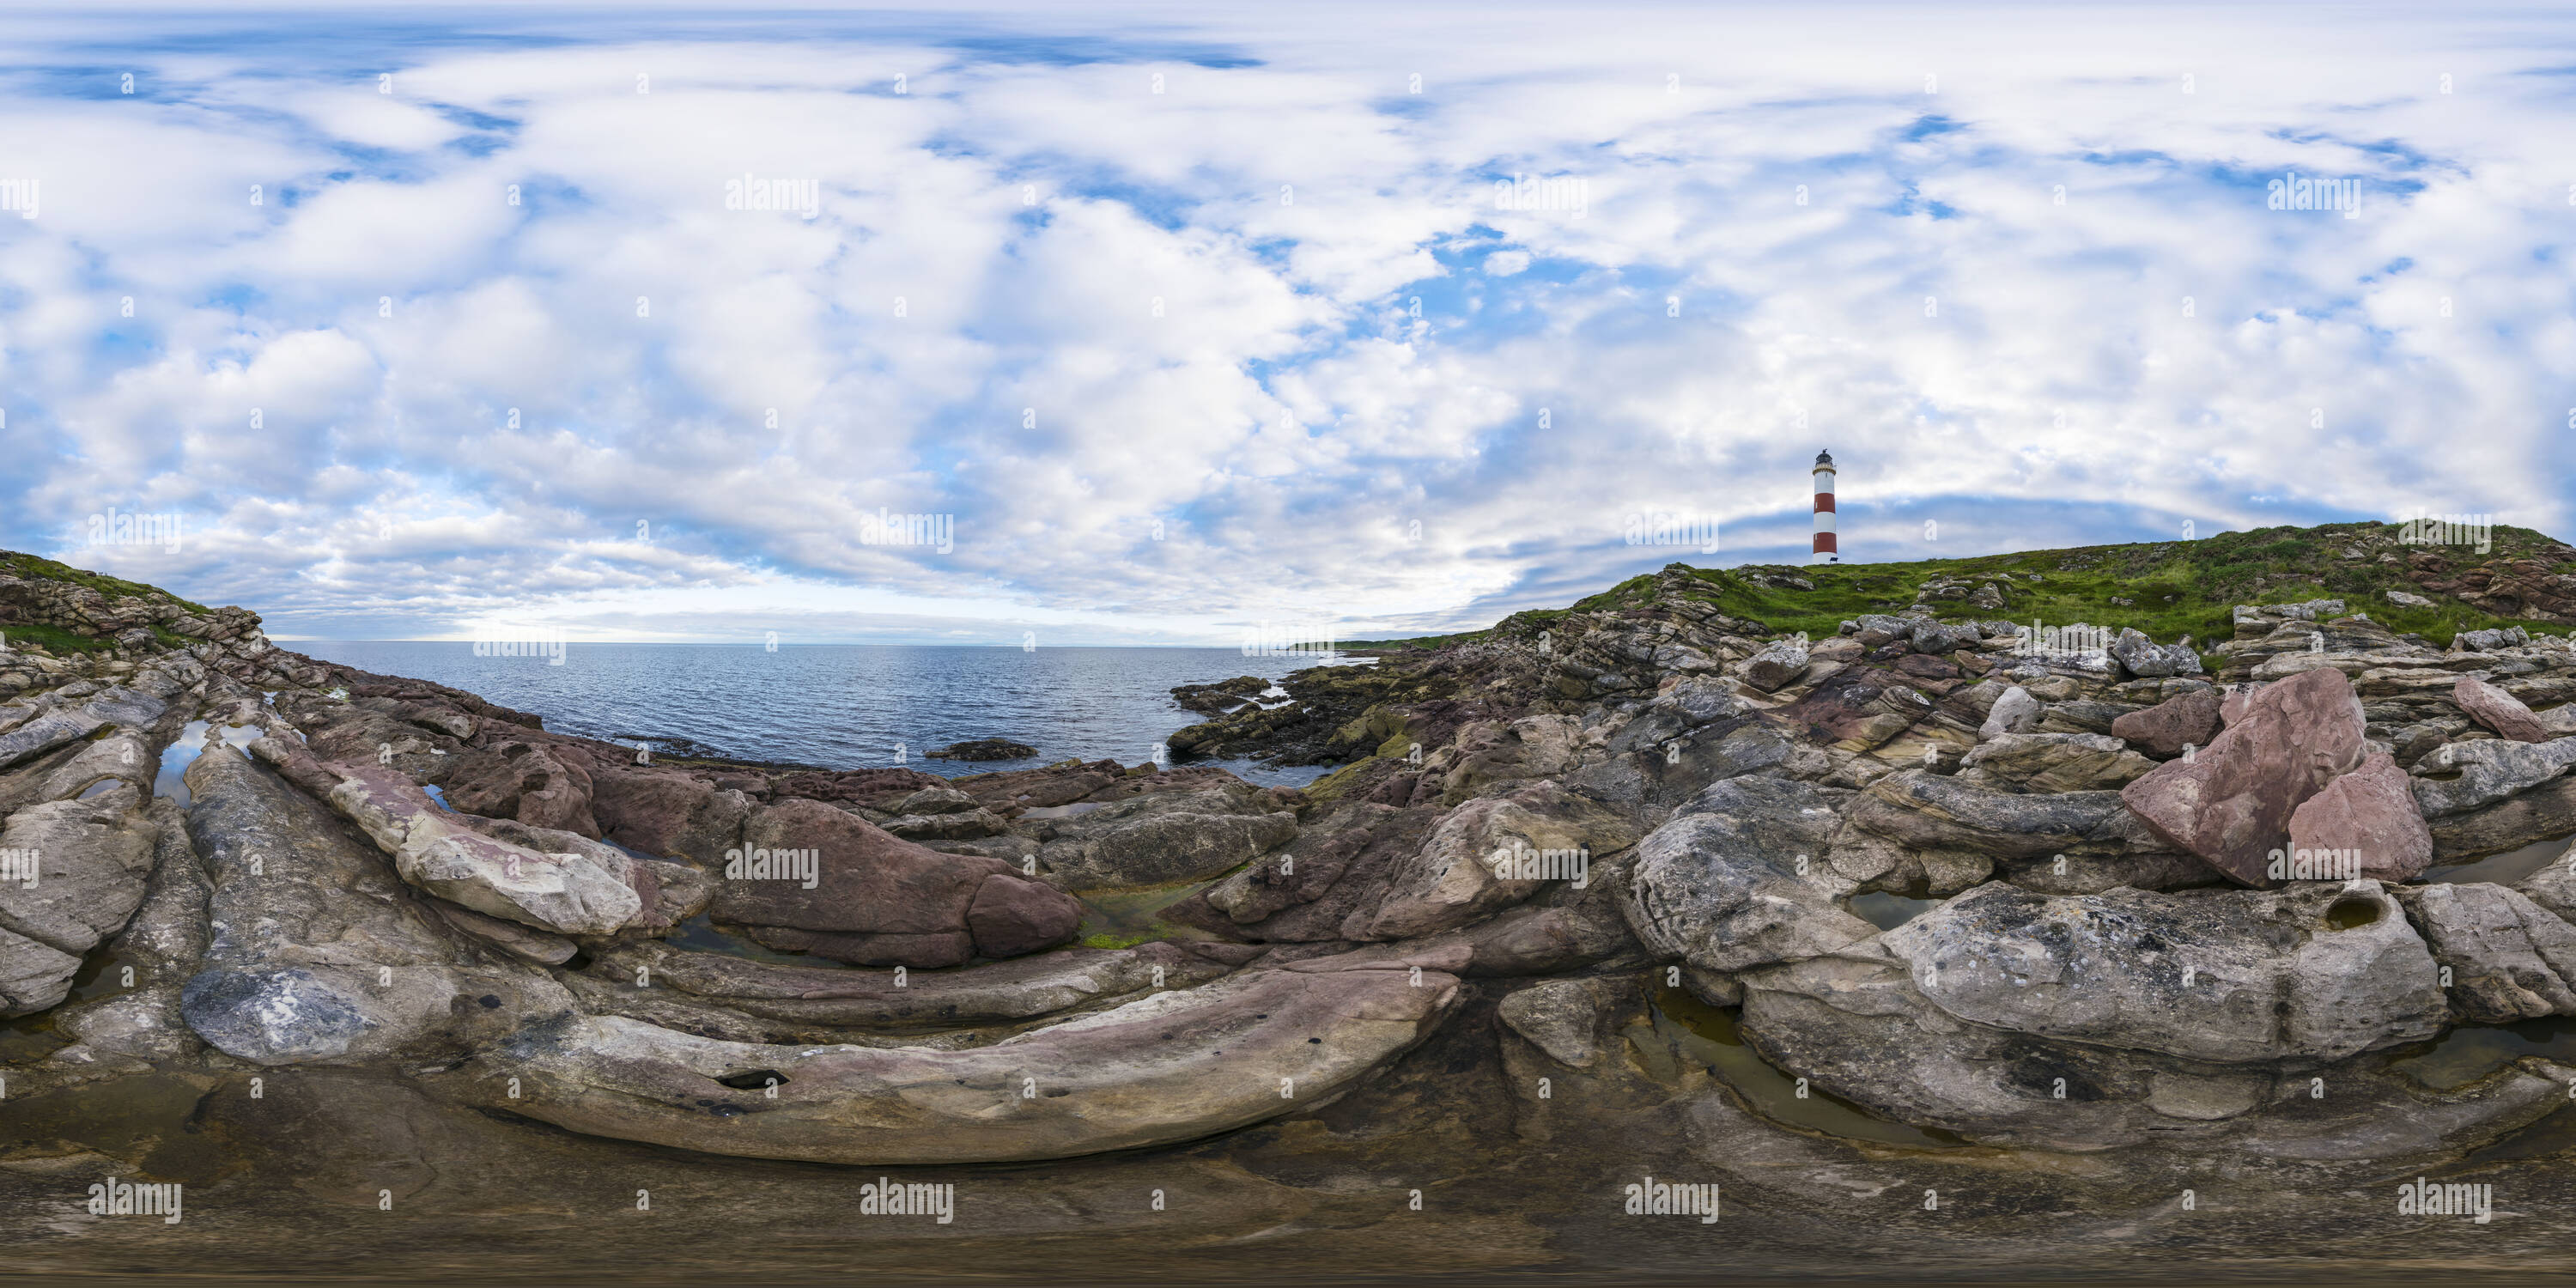 360 degree panoramic view of Rocky foreshore at Tarbat Peninsula